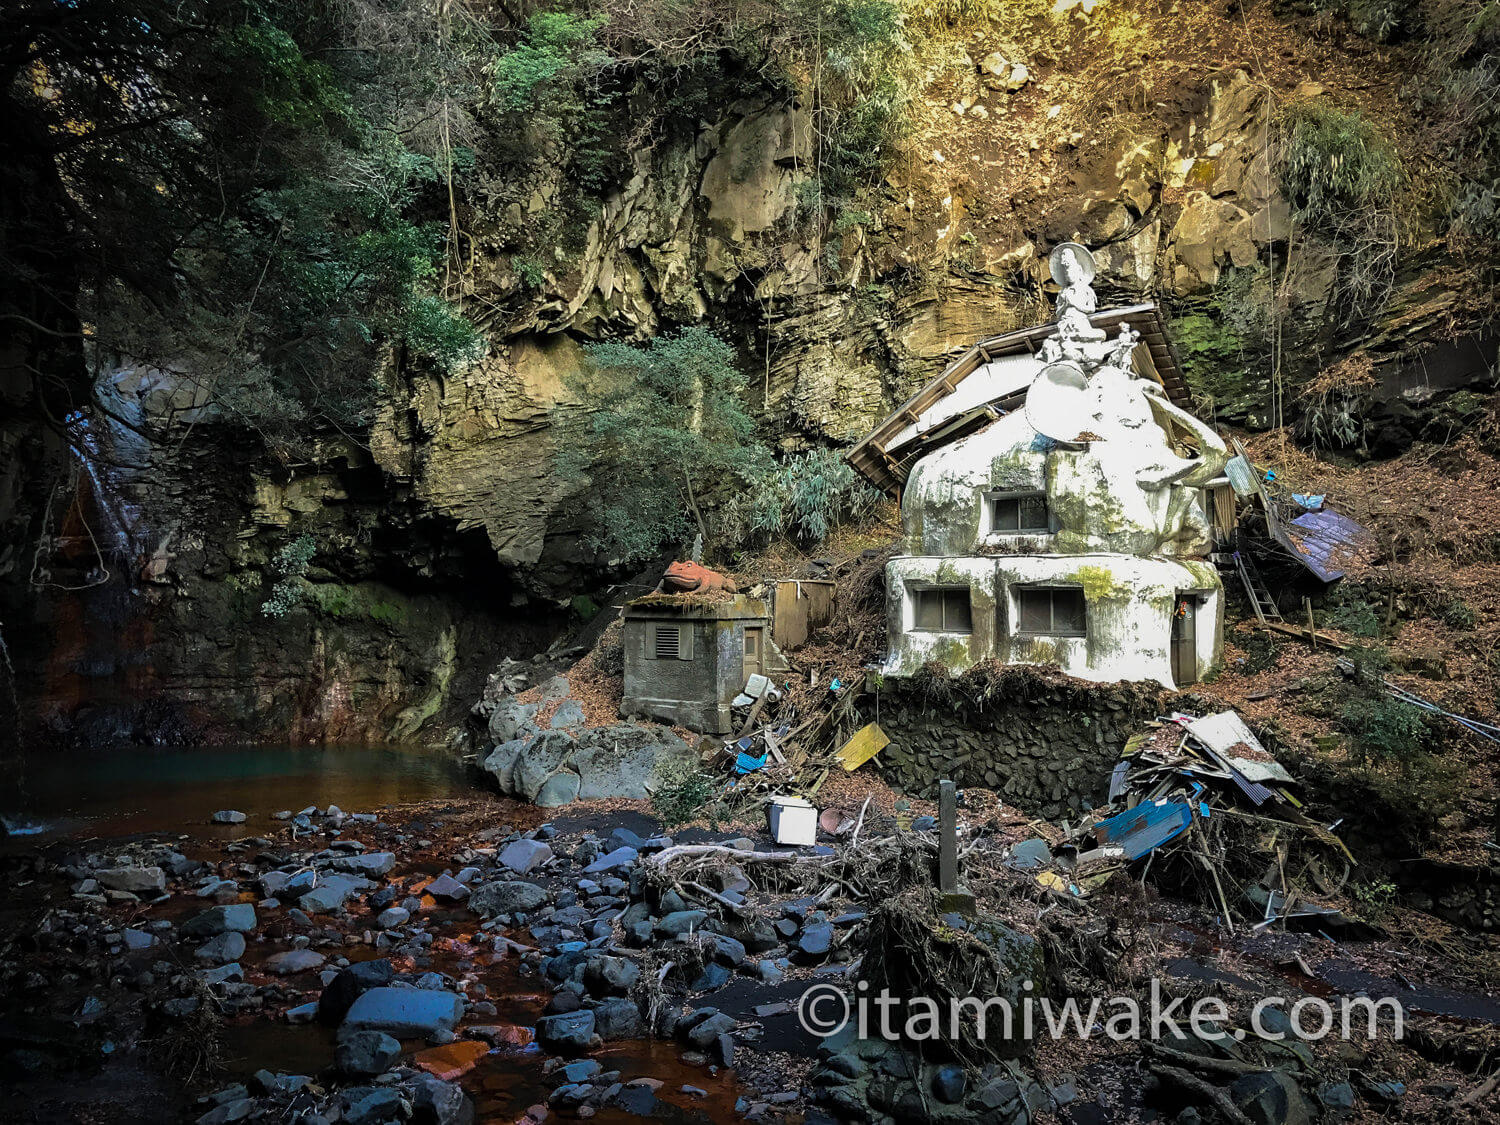 熊本県の清水滝は新興宗教団体の開祖の修行場 謎の像と荒れた建物がヤバさを物語る